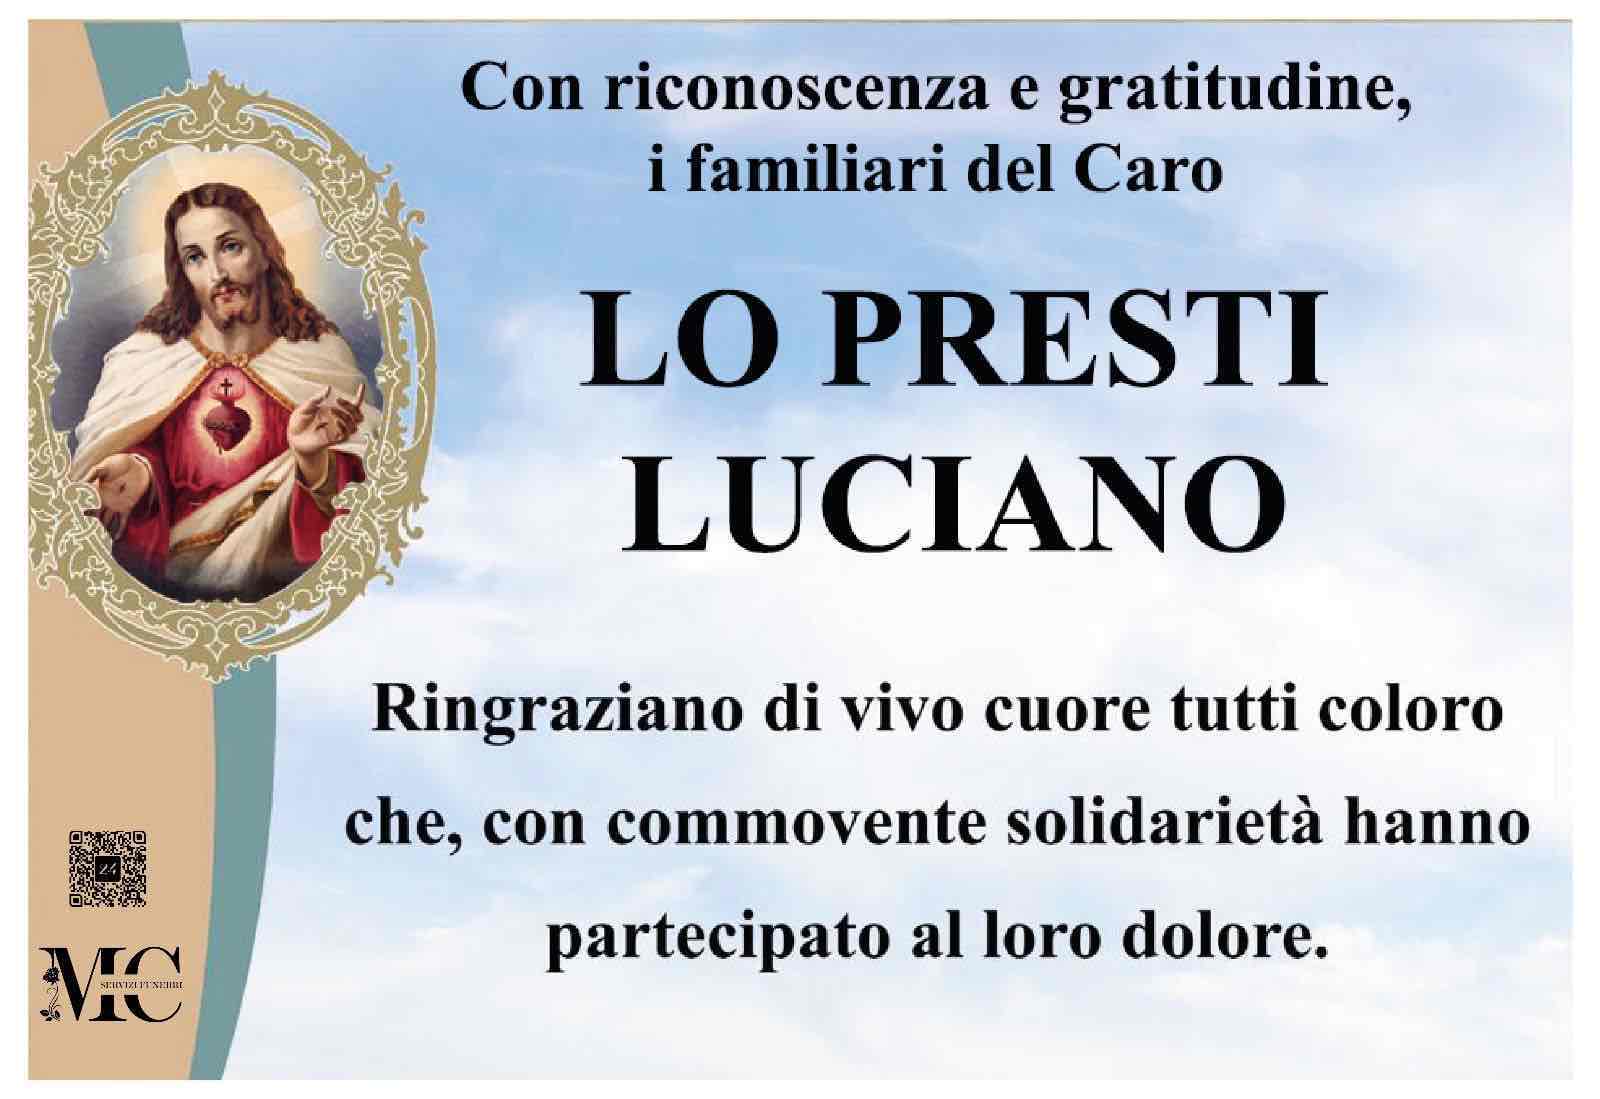 Luciano Lo Presti